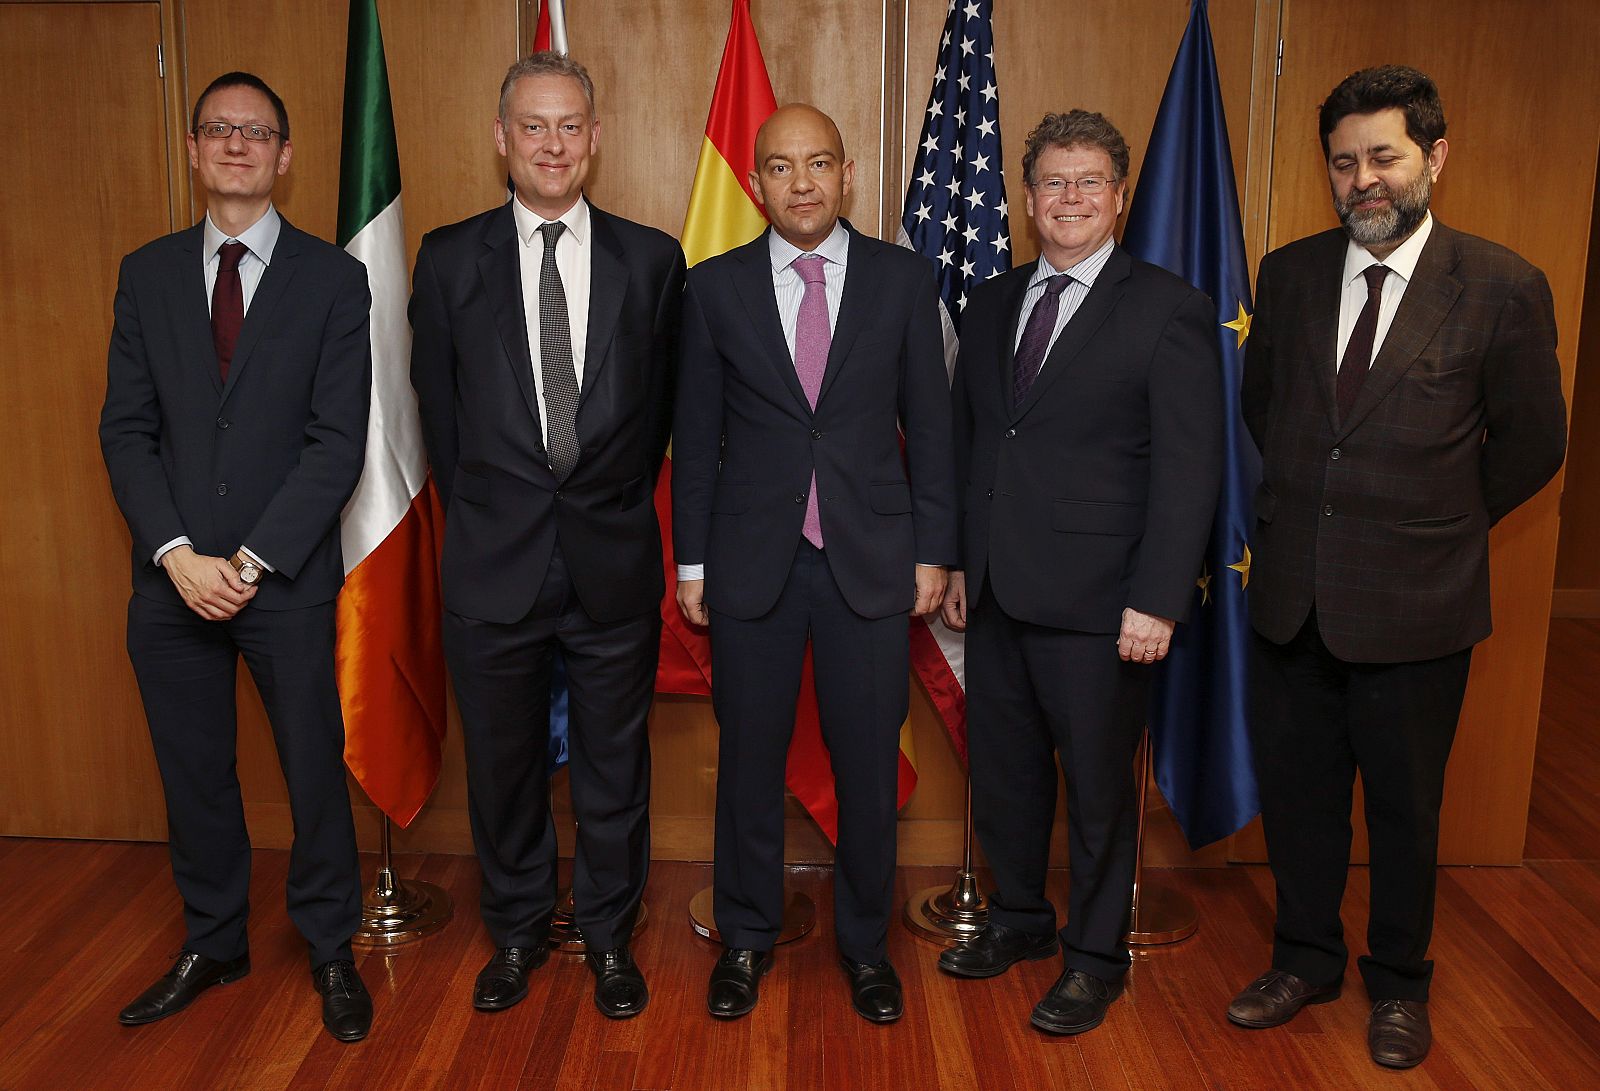 El jefe negociador de EE.UU., Dan Mullaney, y su homólogo de la UE, Ignacio García Bercero, a la derecha de la fotografía, junto al secretario de Estado de Comercio, Jaime García-Legaz